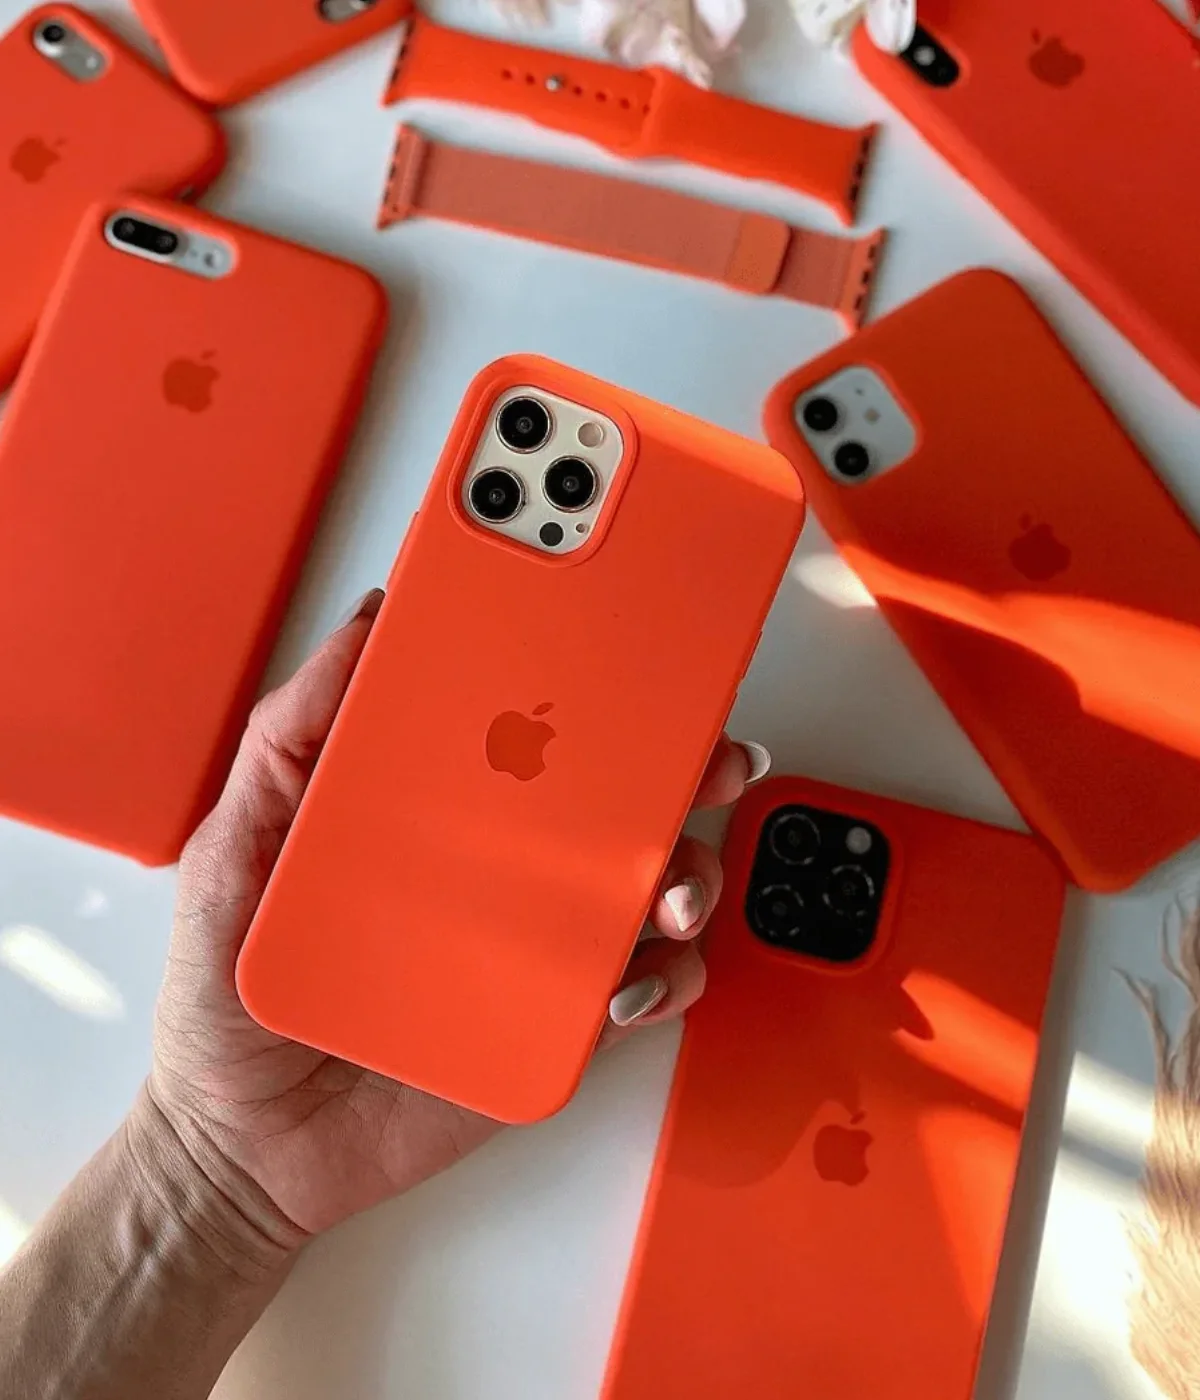 Iphone Liquid Silicone Case - Orange